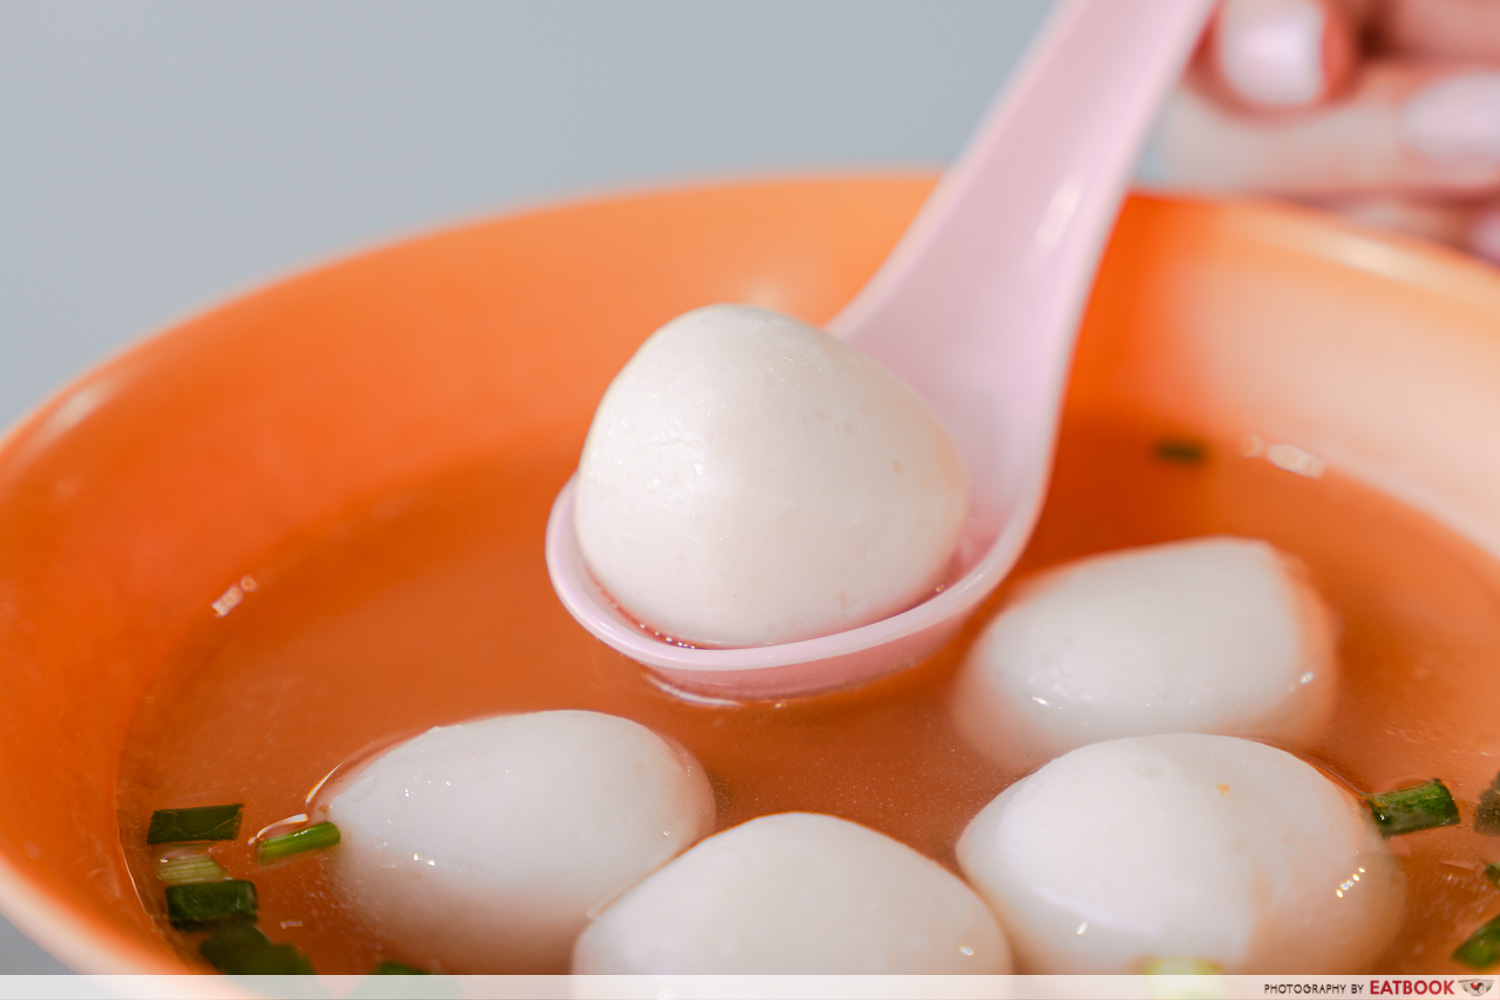 xin lu fishball noodle - fishball